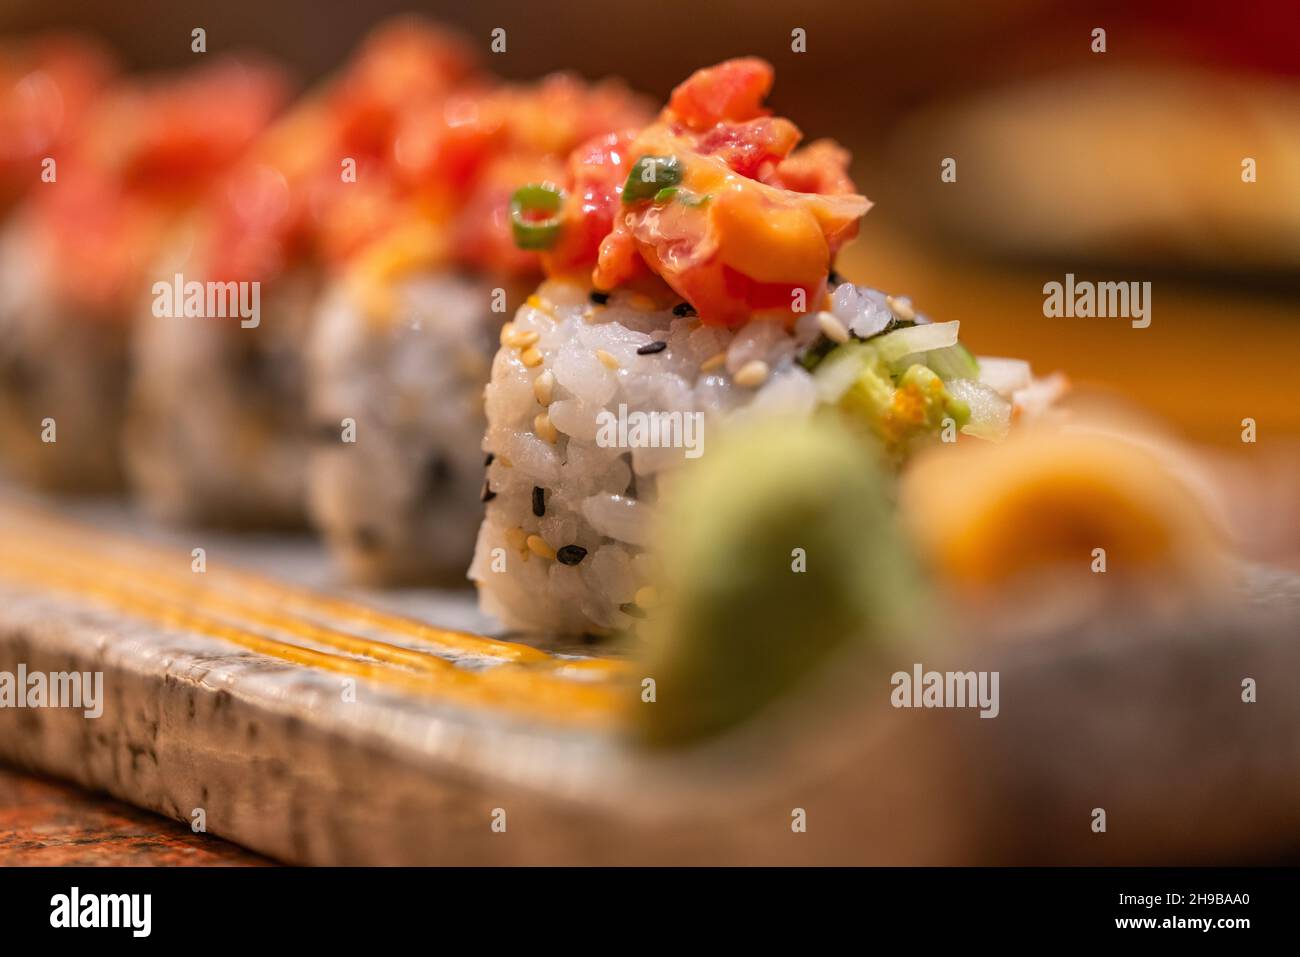 Makro-Sushi-Rolle mit würzigem rohem Thunfisch auf einem schönen Steinteller, gesundes japanisches Essen, ausgewählter Fokus. Stockfoto